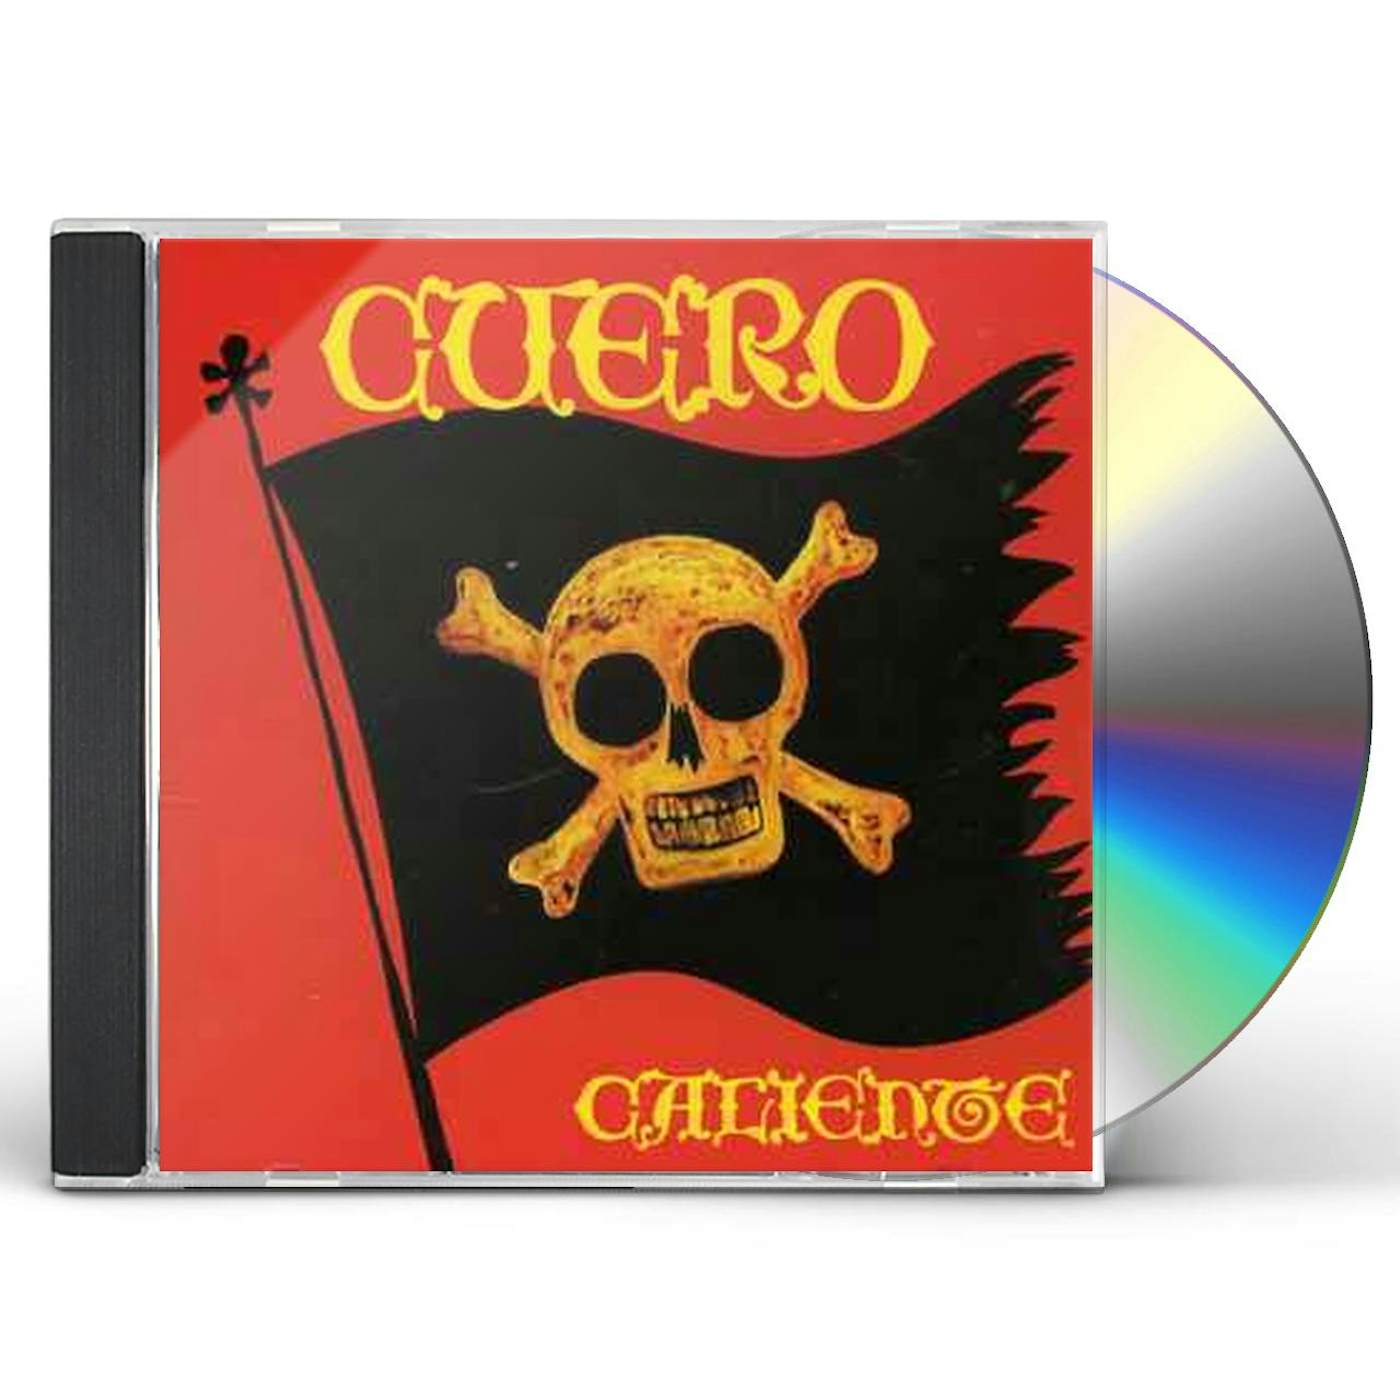 Vox Dei CUERO CALIENTE CD